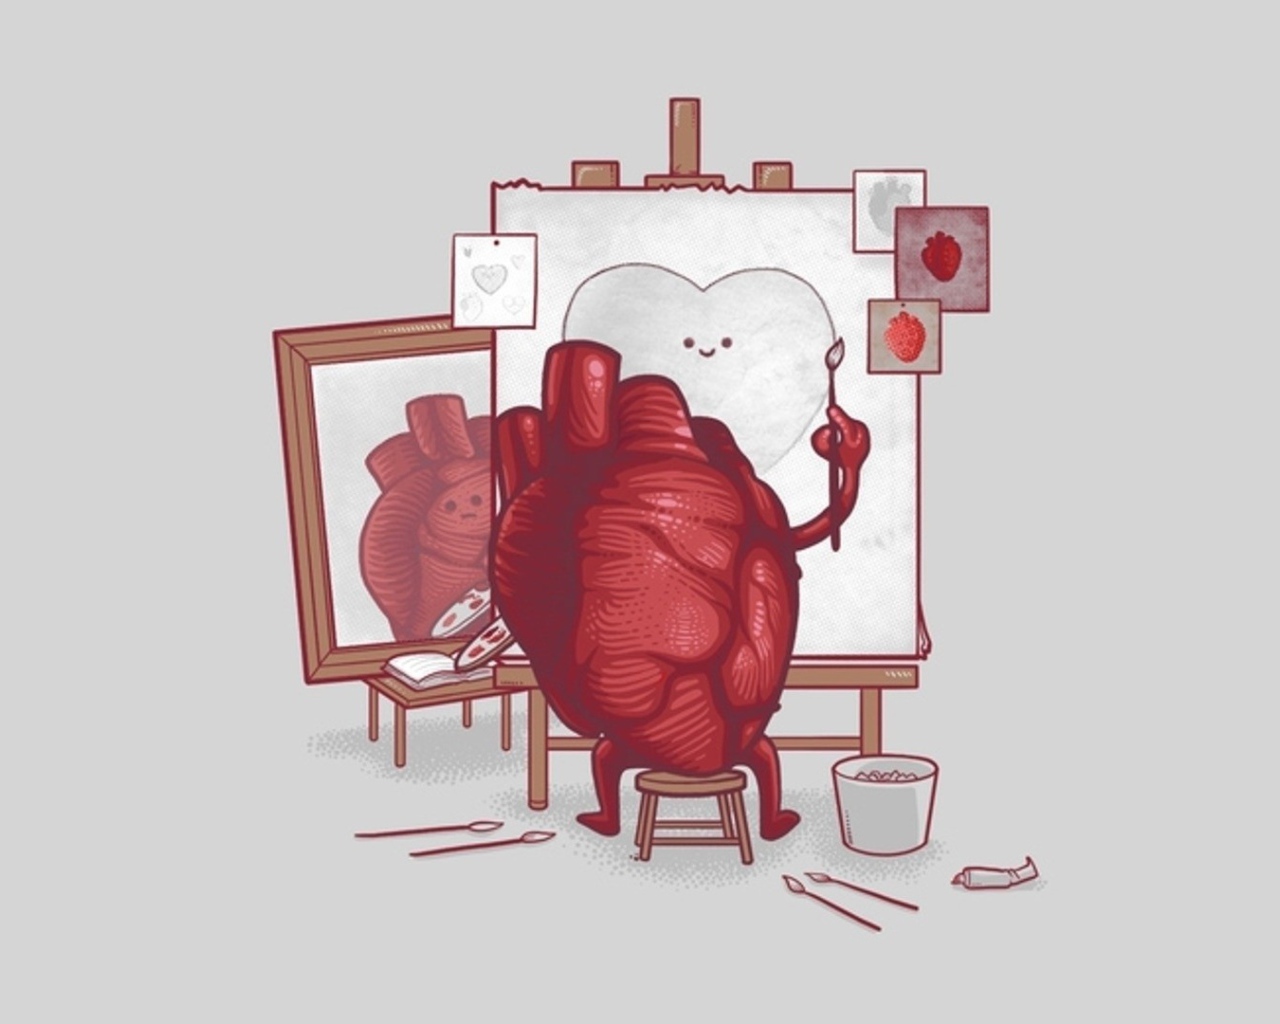 Сердце рисует автопортрет